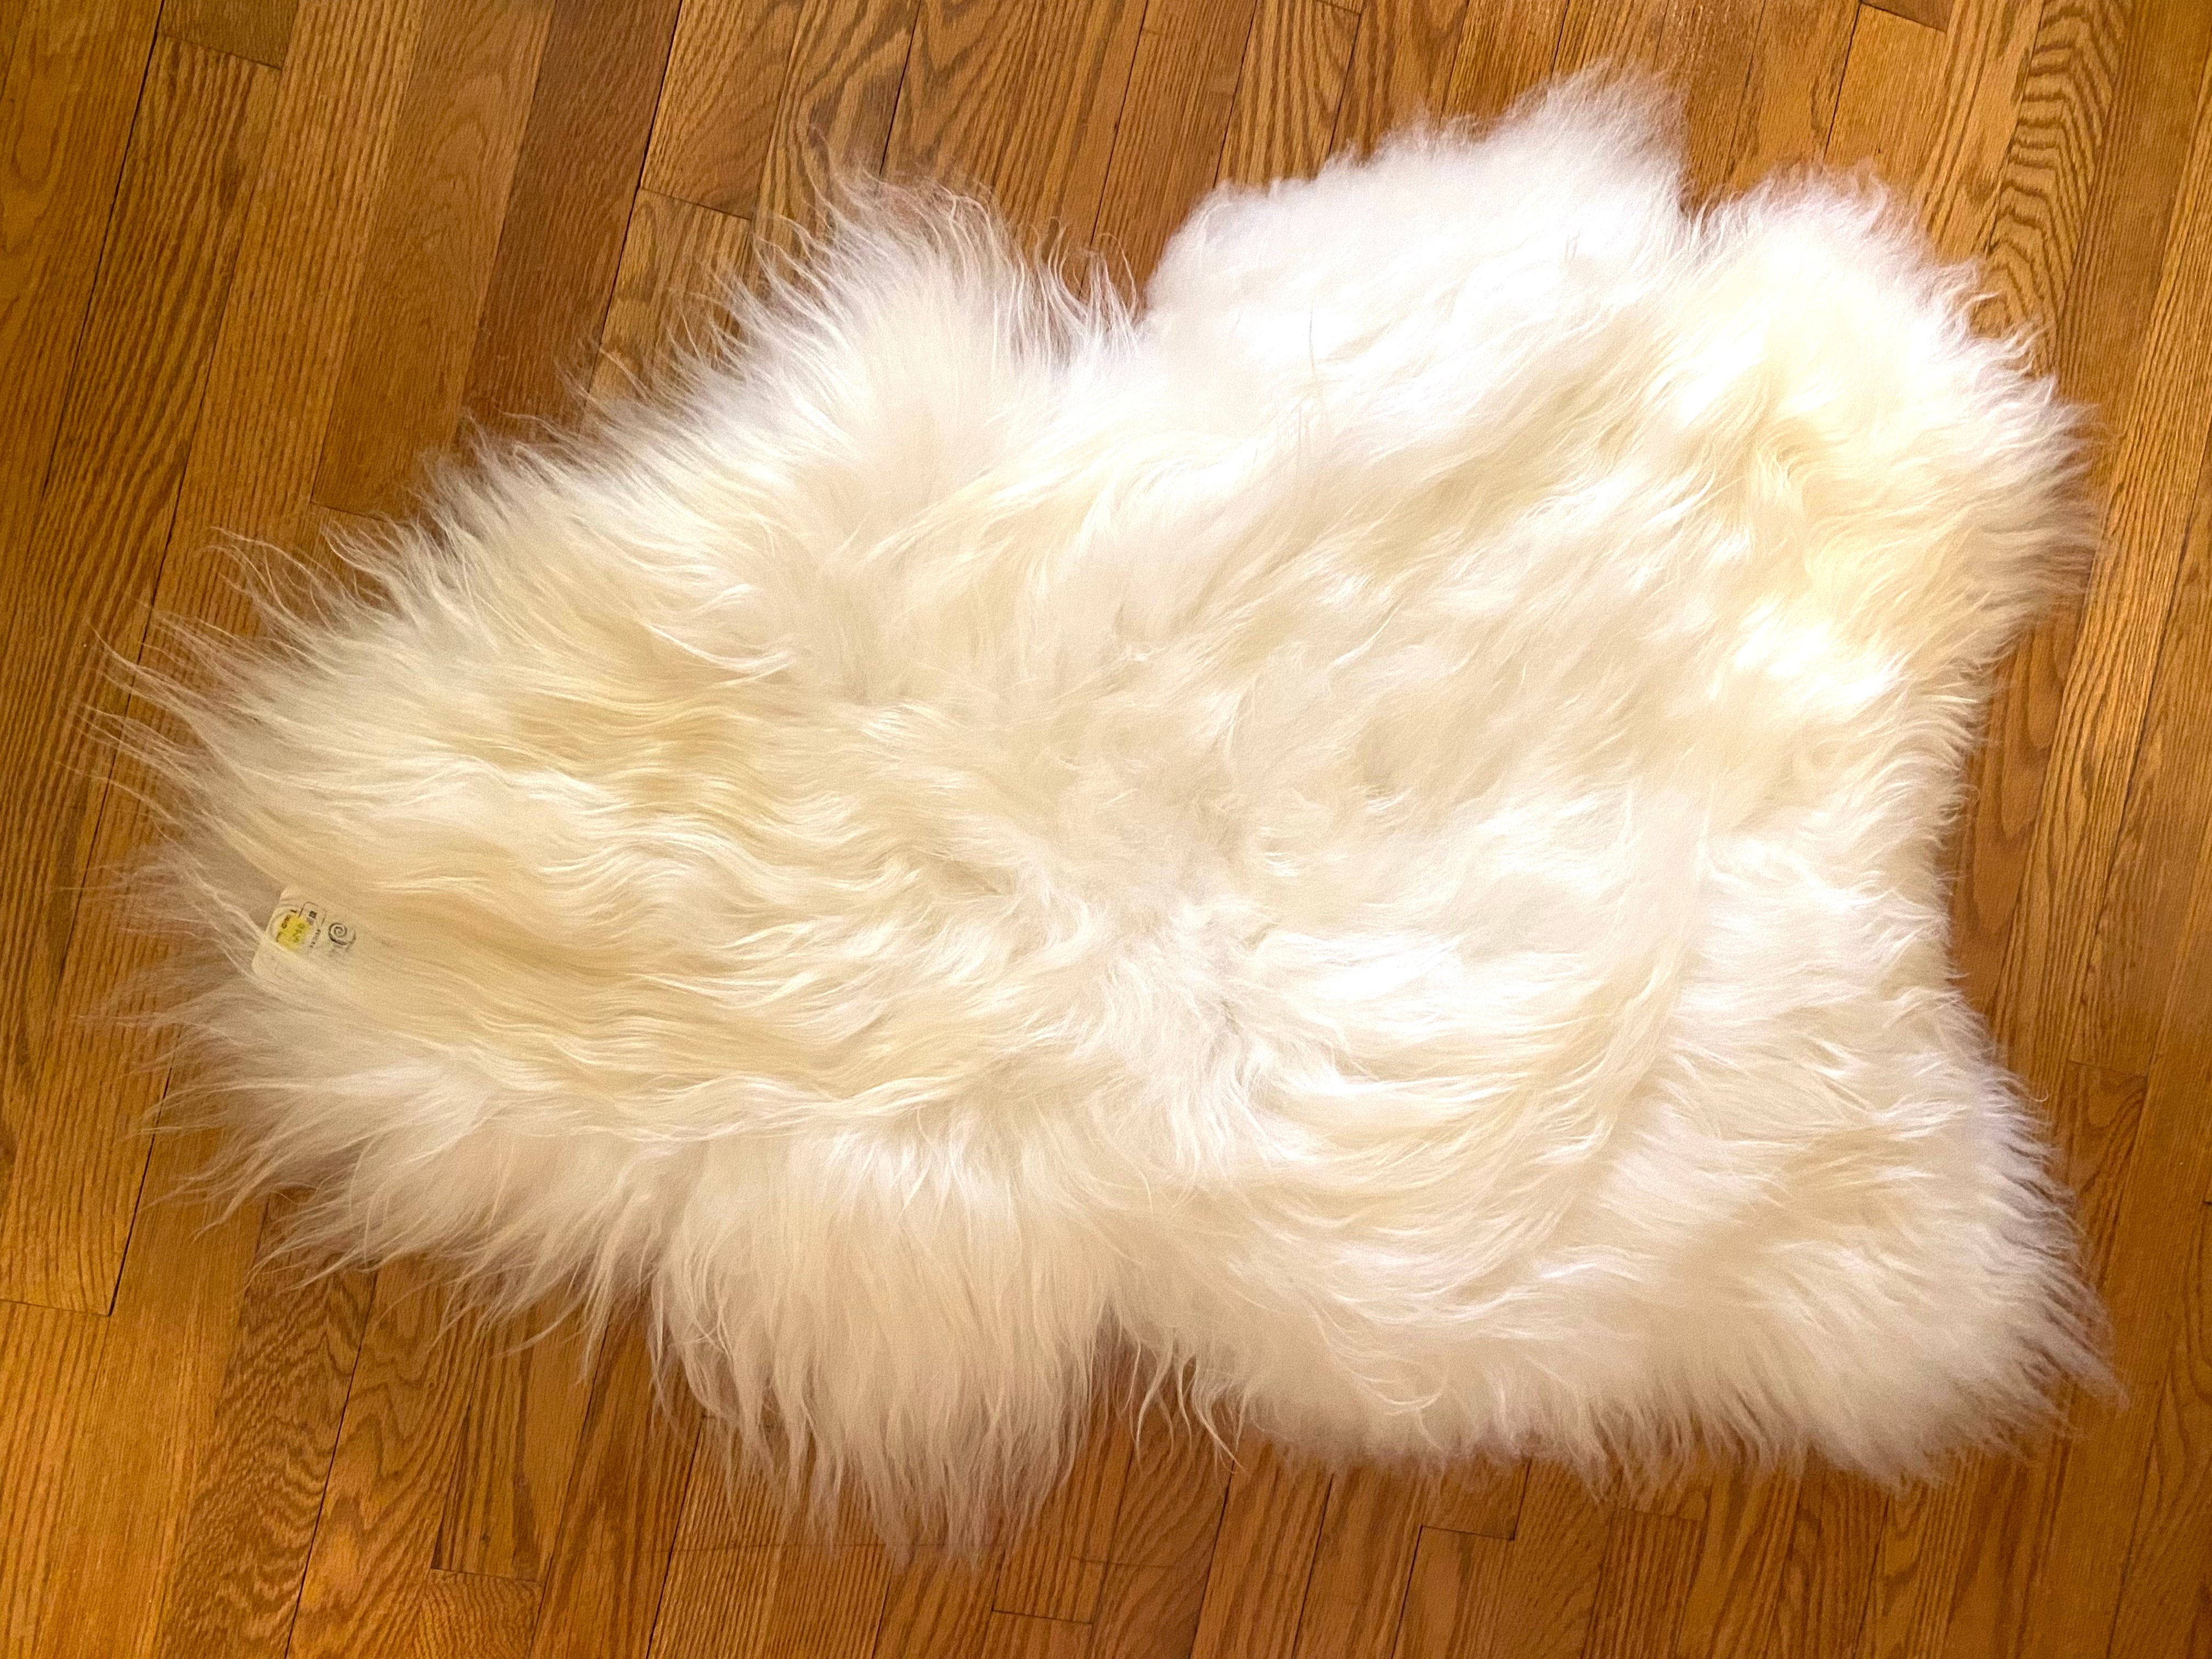 Sheepskin Like A Fluffy Cloud!